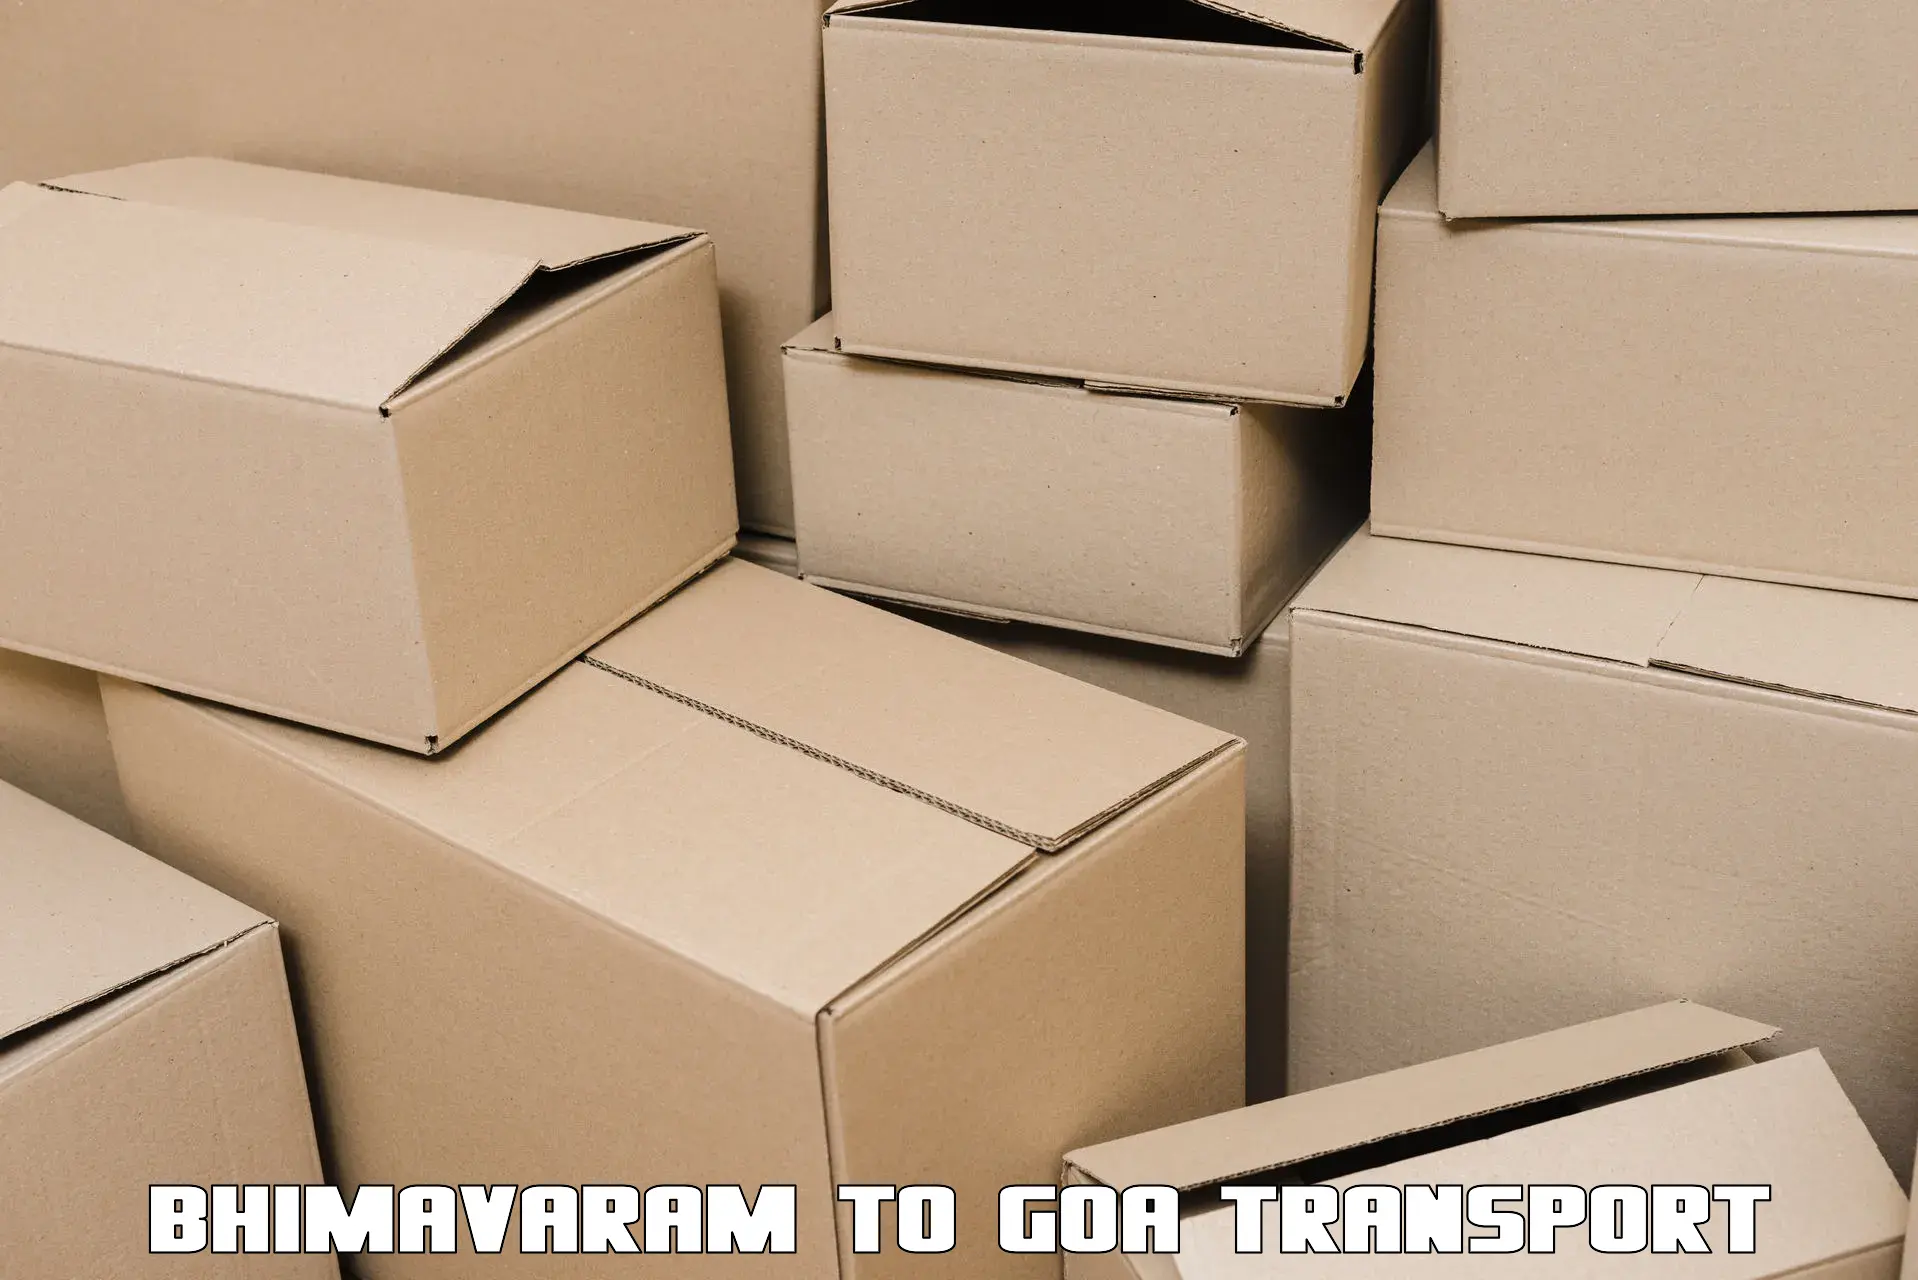 Container transport service Bhimavaram to Margao